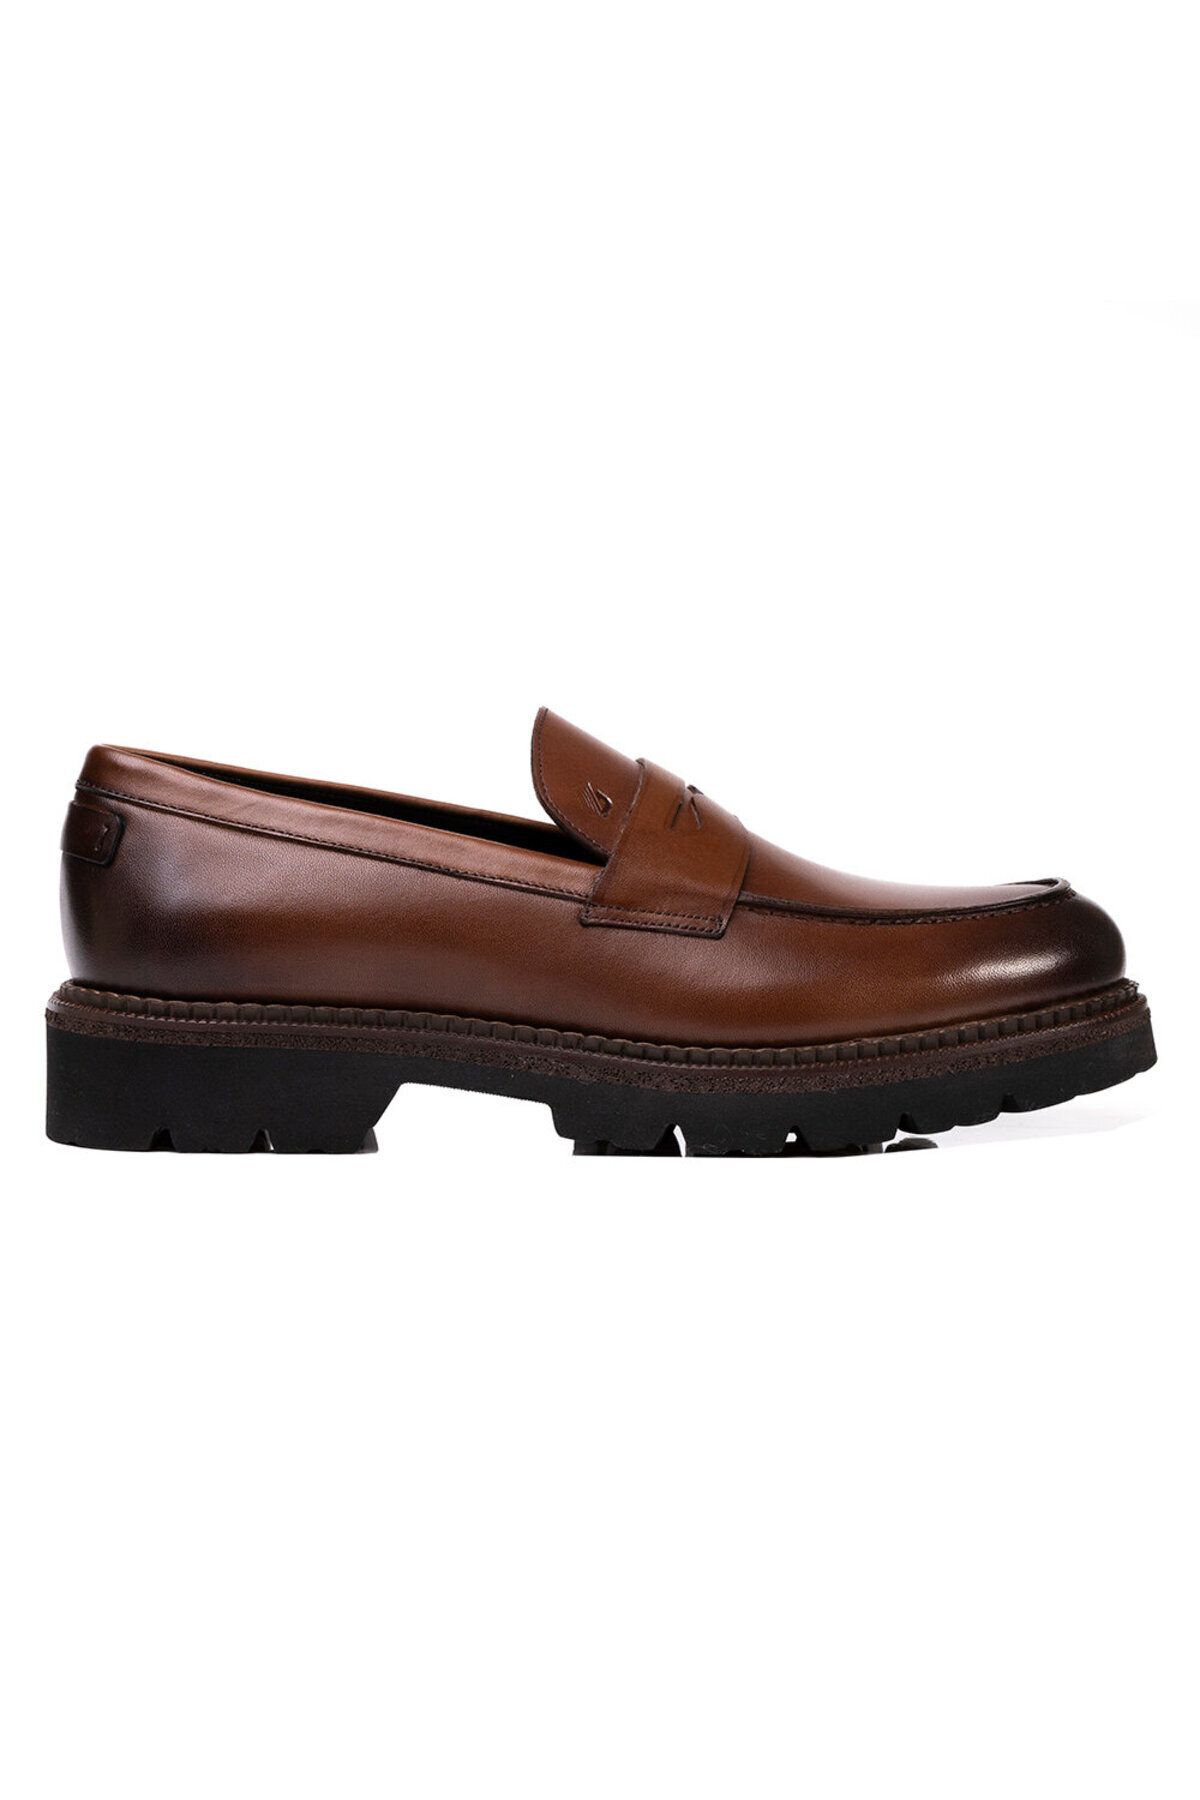 Greyder Erkek Kahverengi Hakiki Deri Klasik Ayakkabı 3k1ua75135